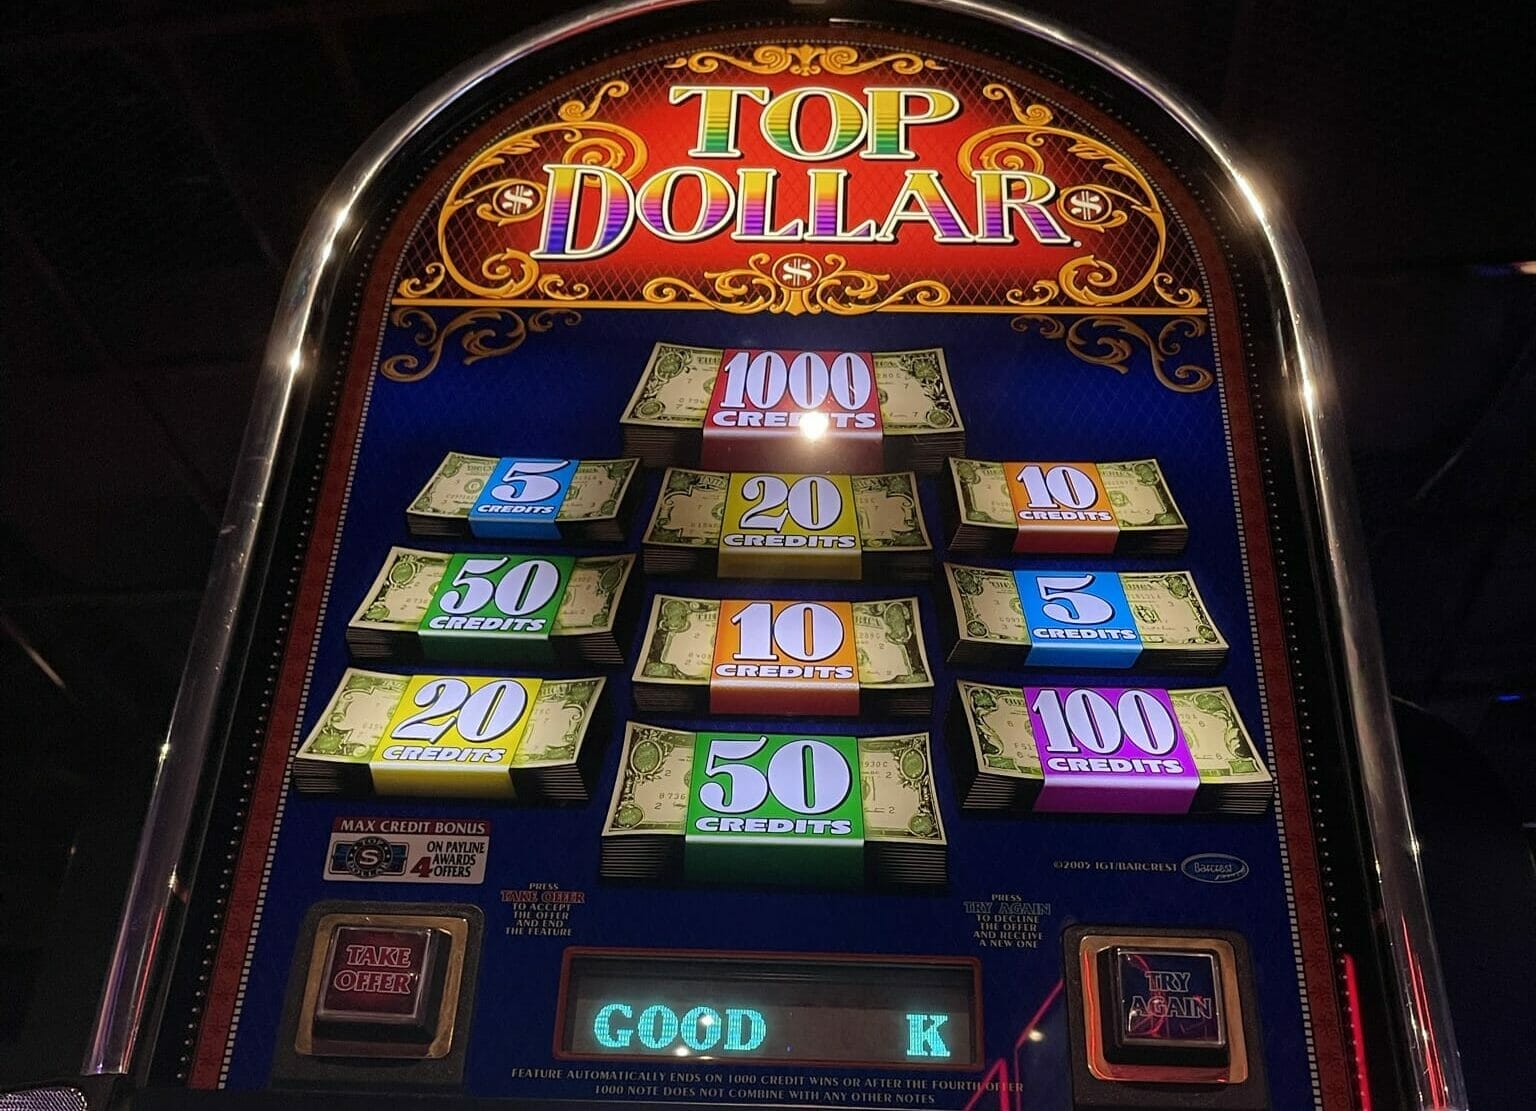 Top 5 Reel Slots - Play The Best 5 Reel Slots Online.